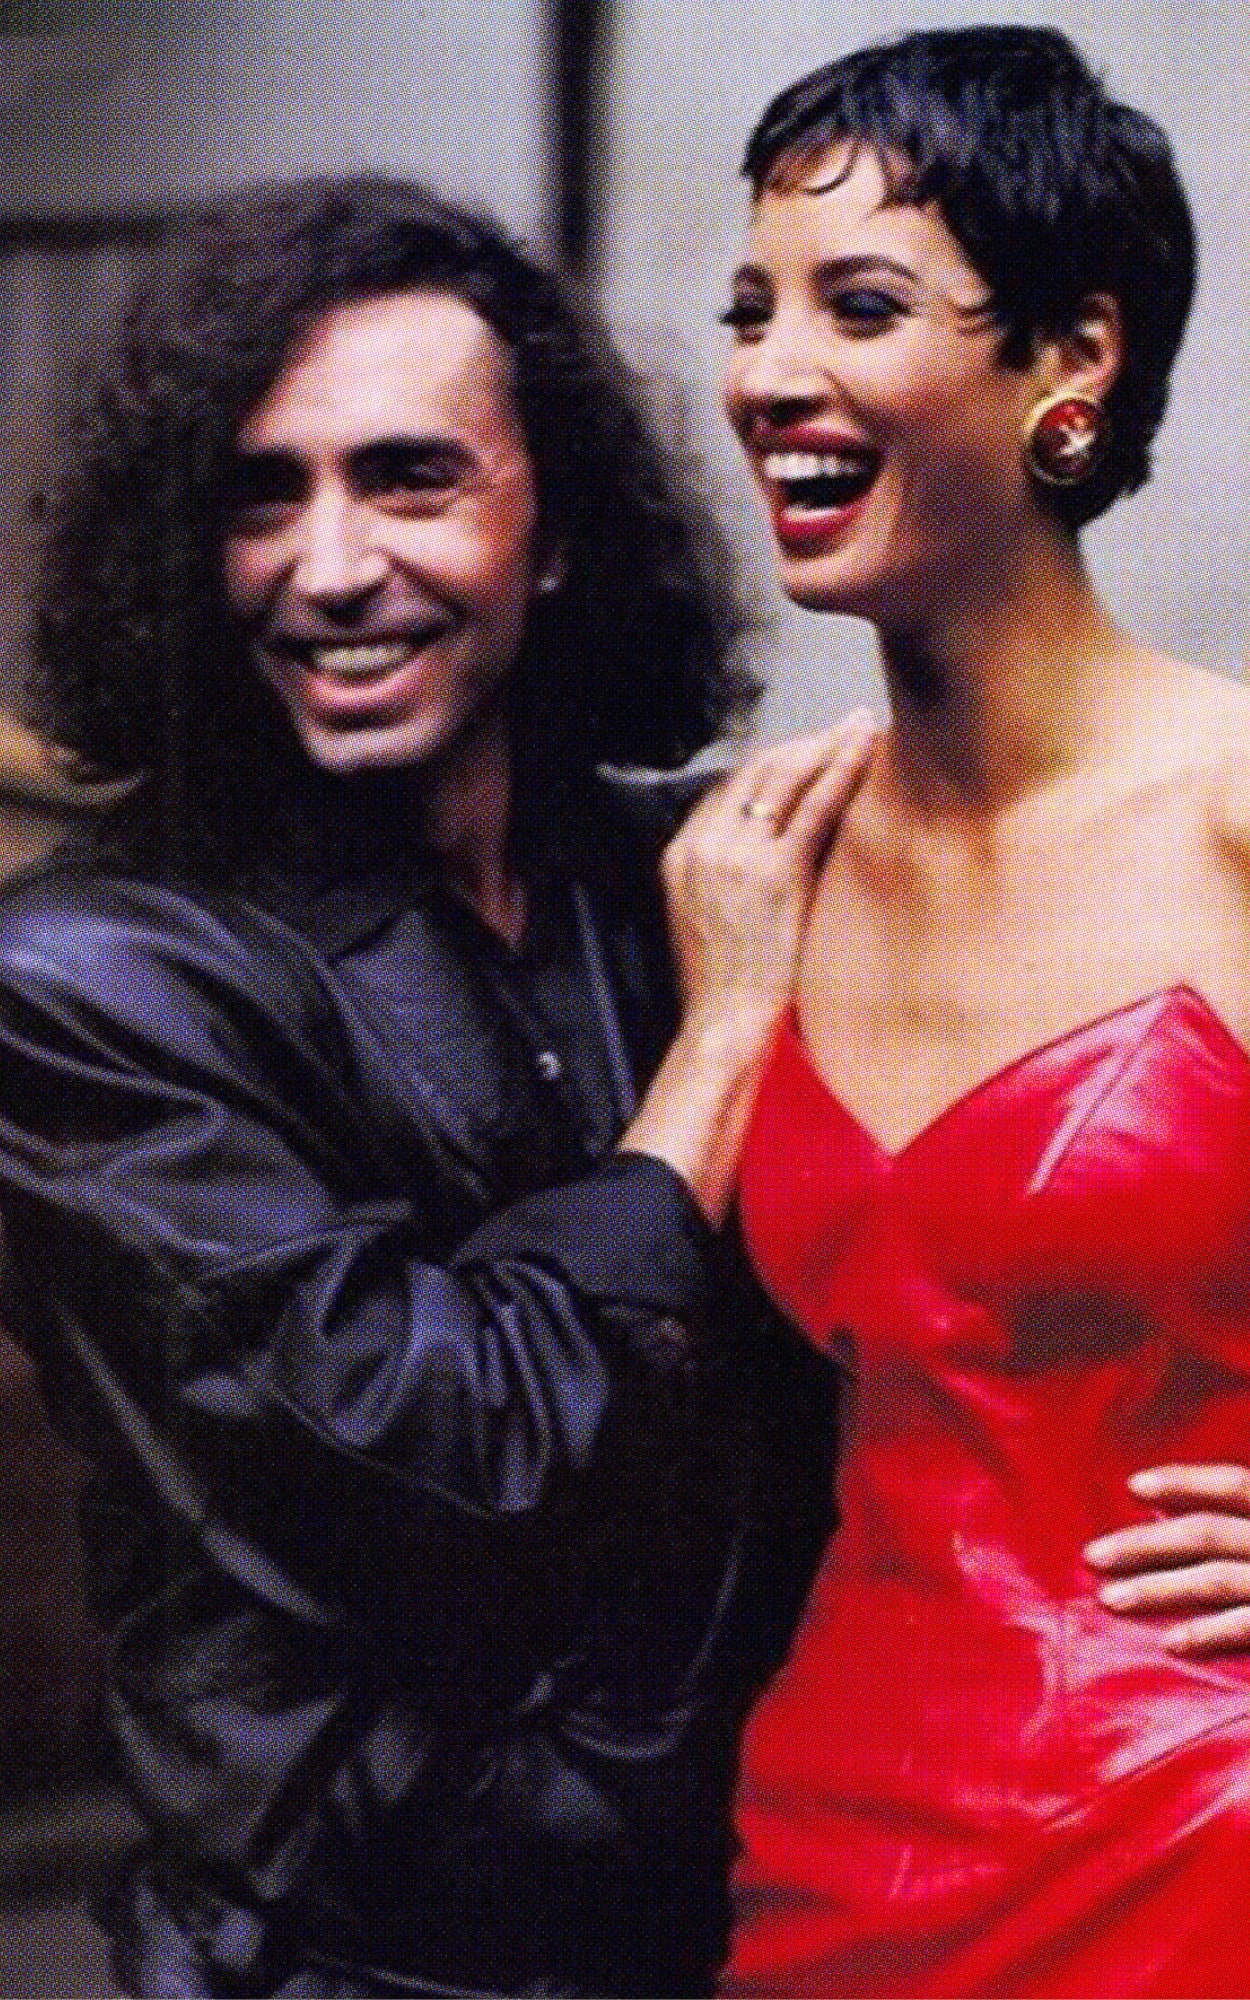 Валерий Леонтьев и Кристи Тарлингтон в 1990 году — на съемке американского Vogue